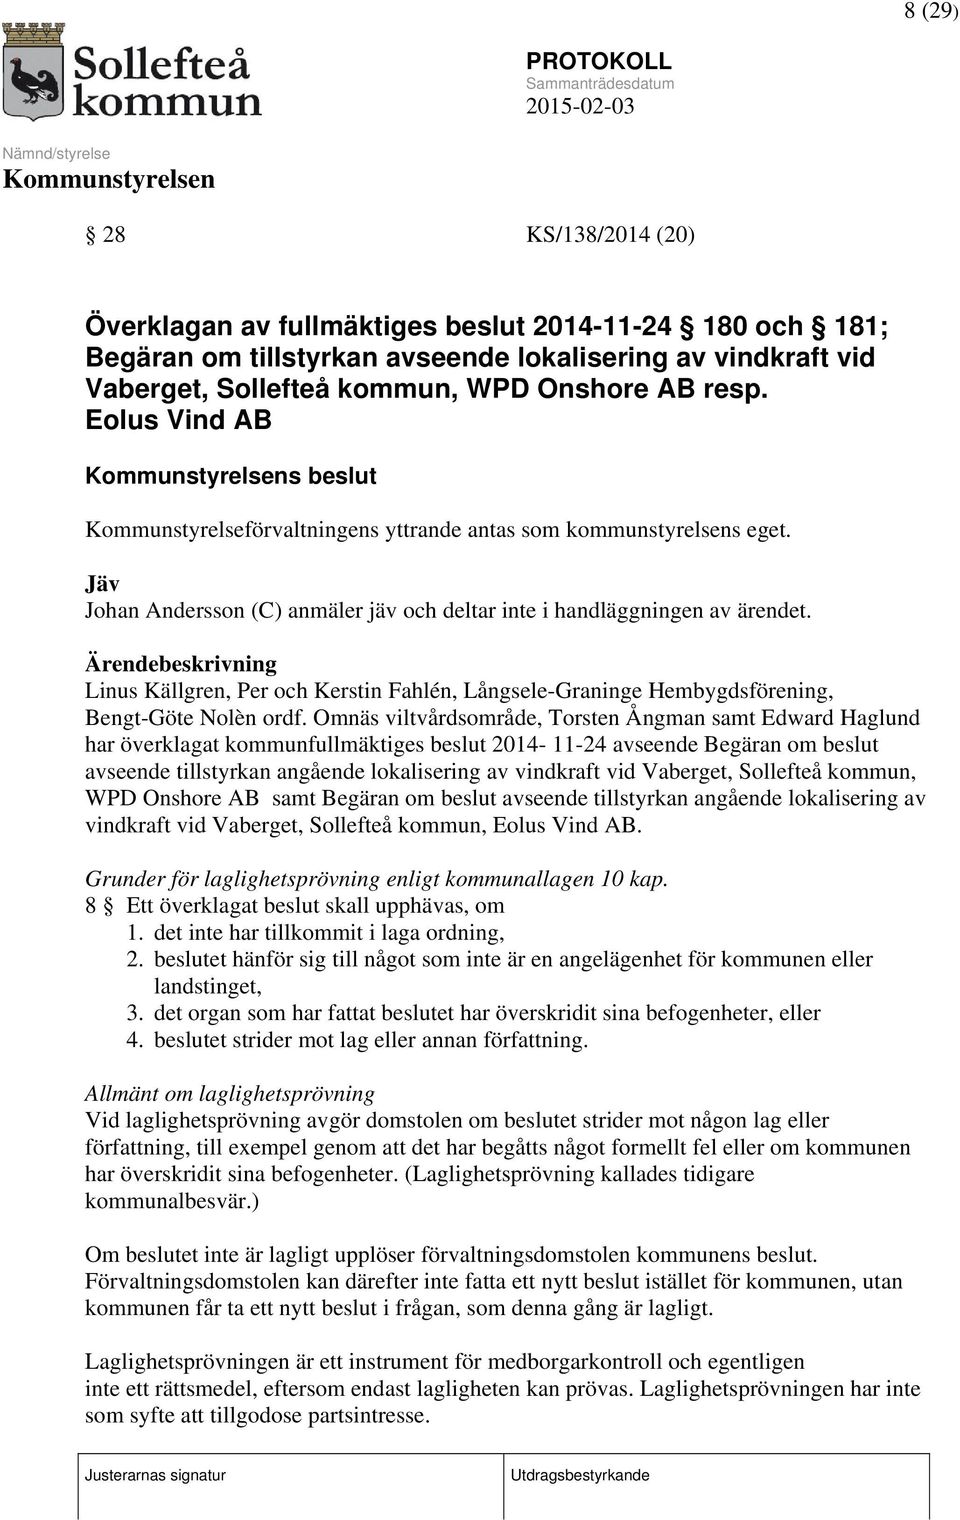 Ärendebeskrivning Linus Källgren, Per och Kerstin Fahlén, Långsele-Graninge Hembygdsförening, Bengt-Göte Nolèn ordf.